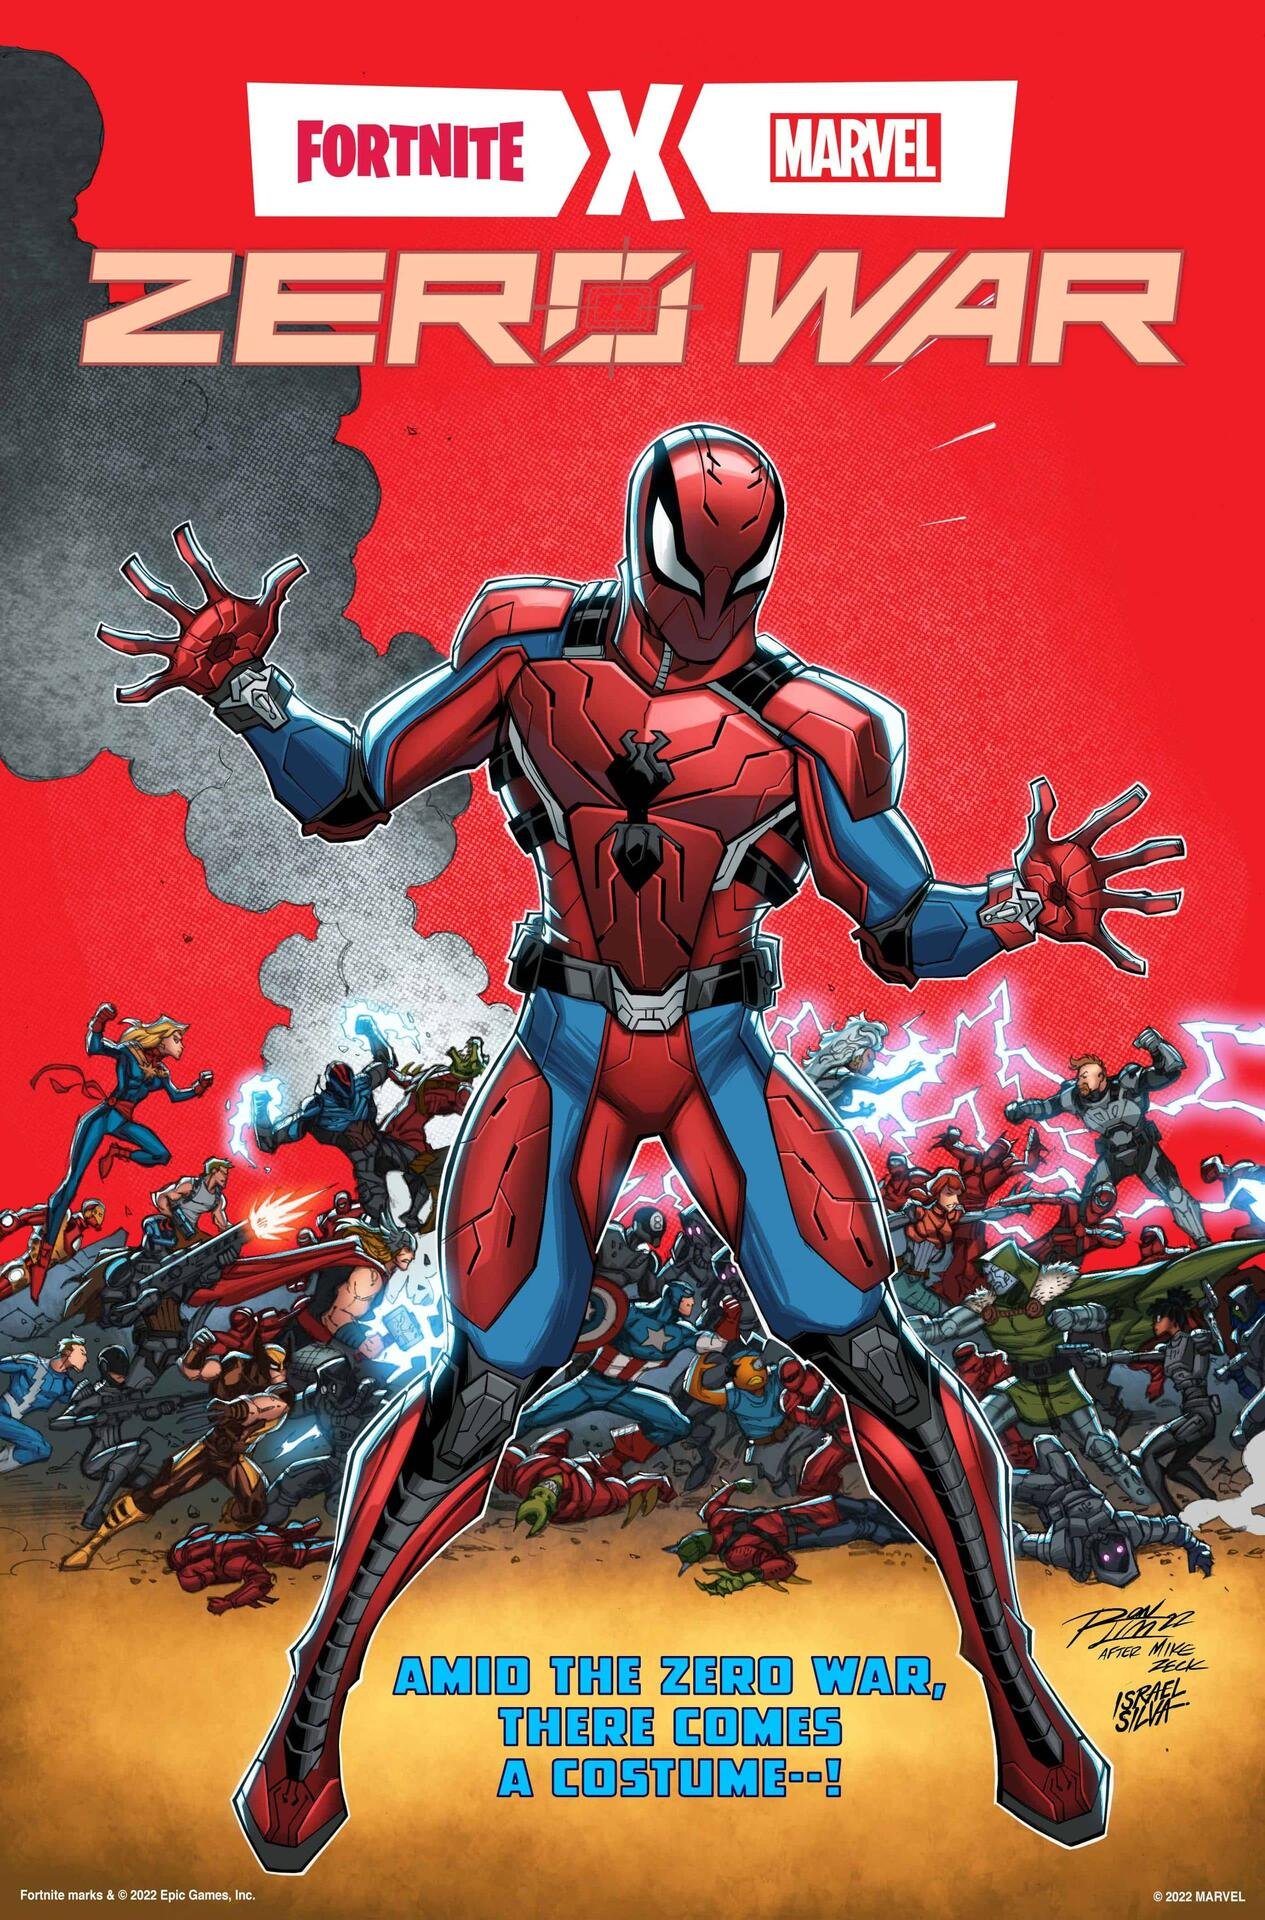 La Spider-Man Zero Suit fa il suo esordio in Fortnite X Marvel: Zero War